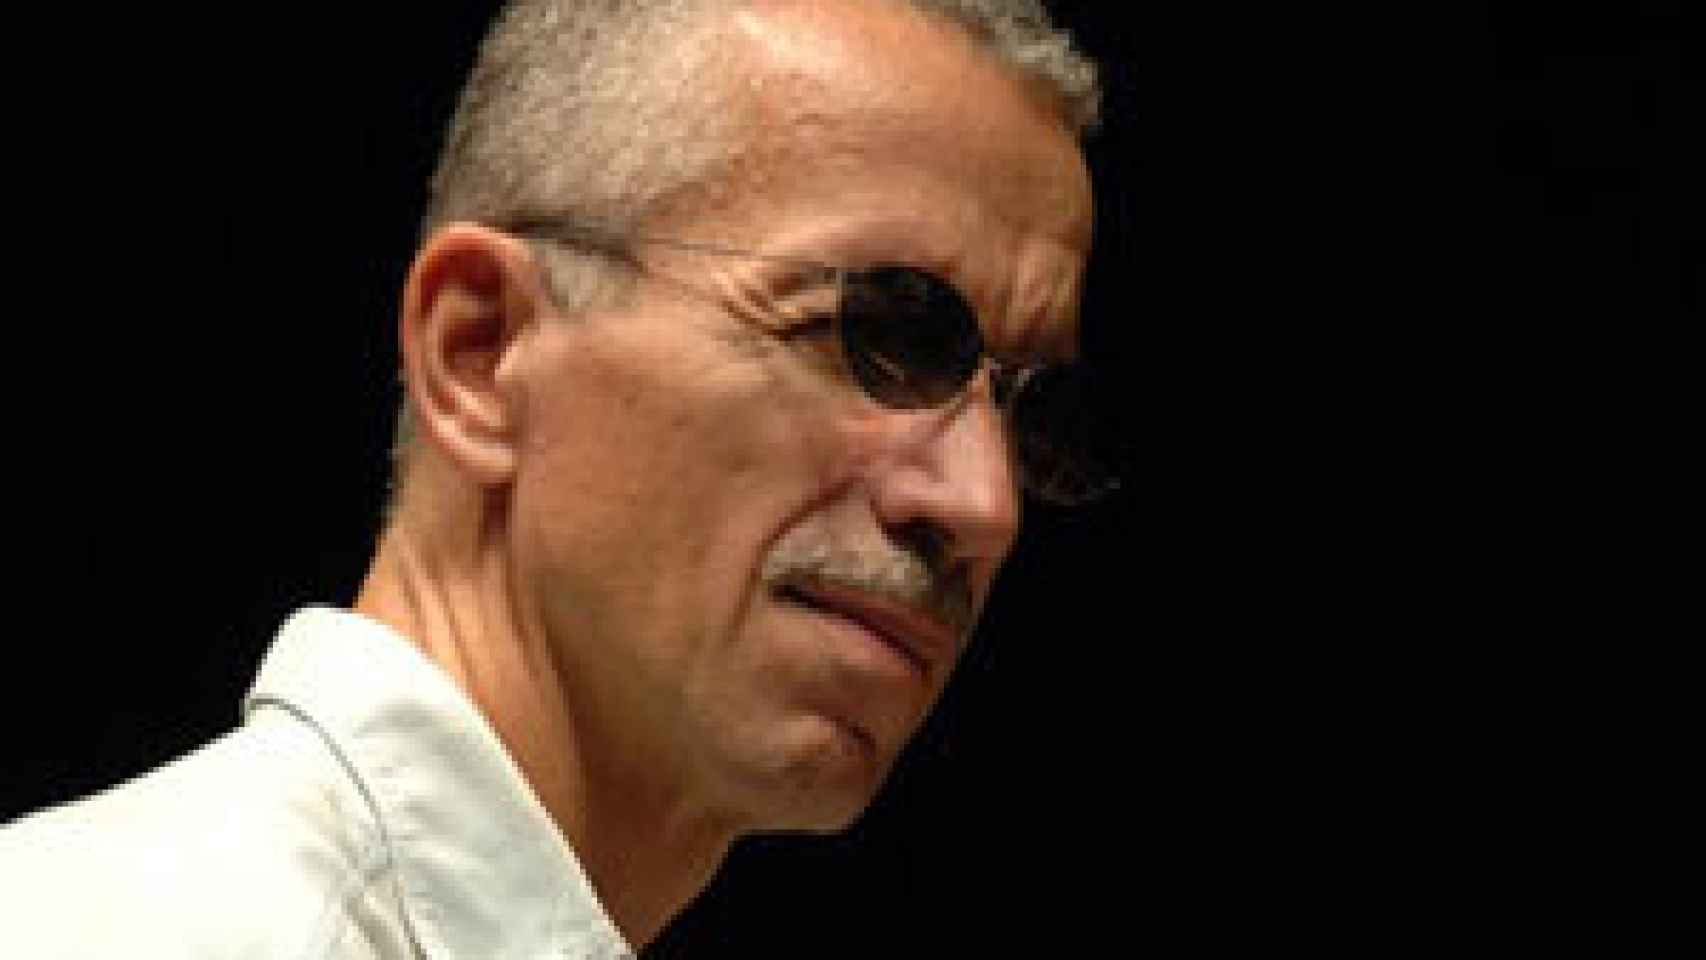 Image: El silencio según Keith Jarrett